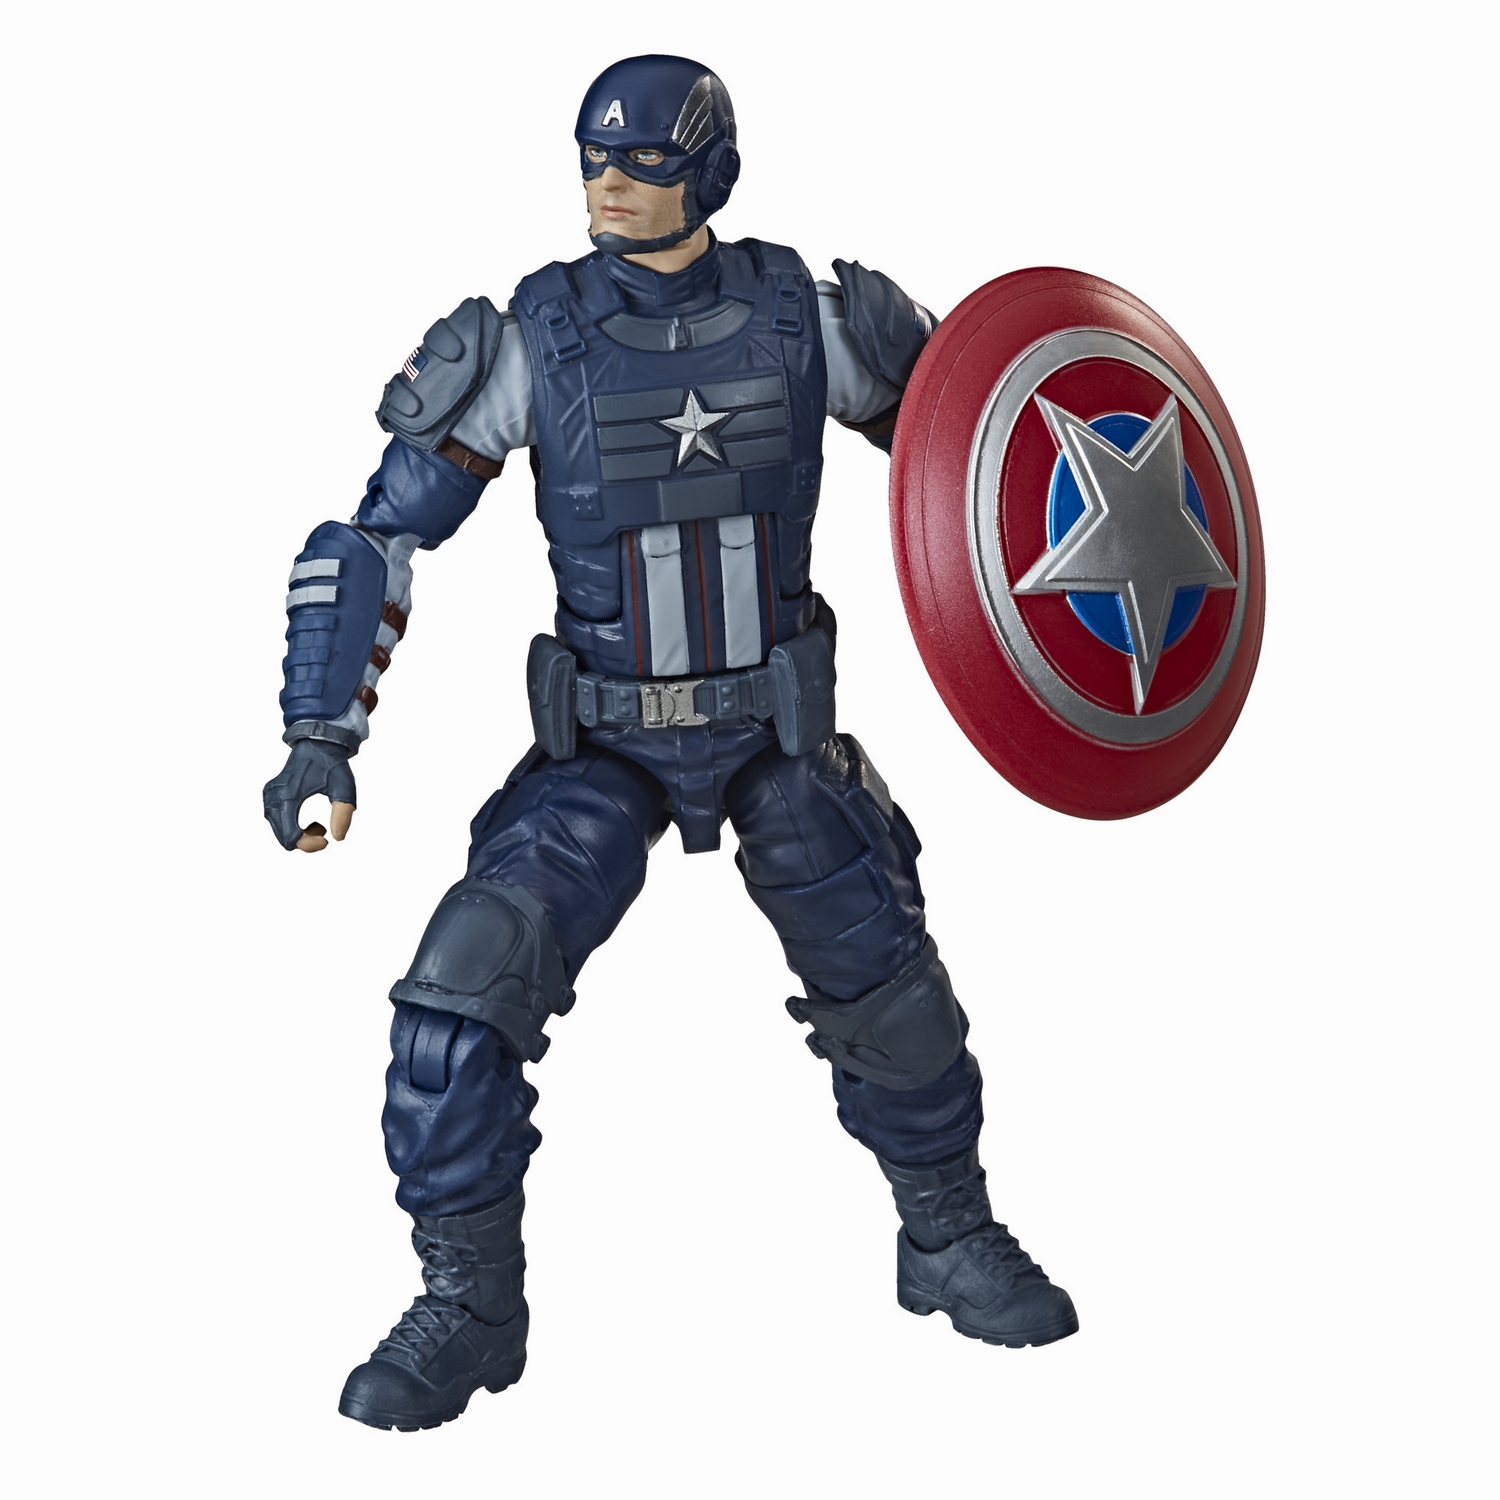 MARVEL LEGENDS SERIES GAMERVERSE 6-INCH Figure - Captain America oop.jpg